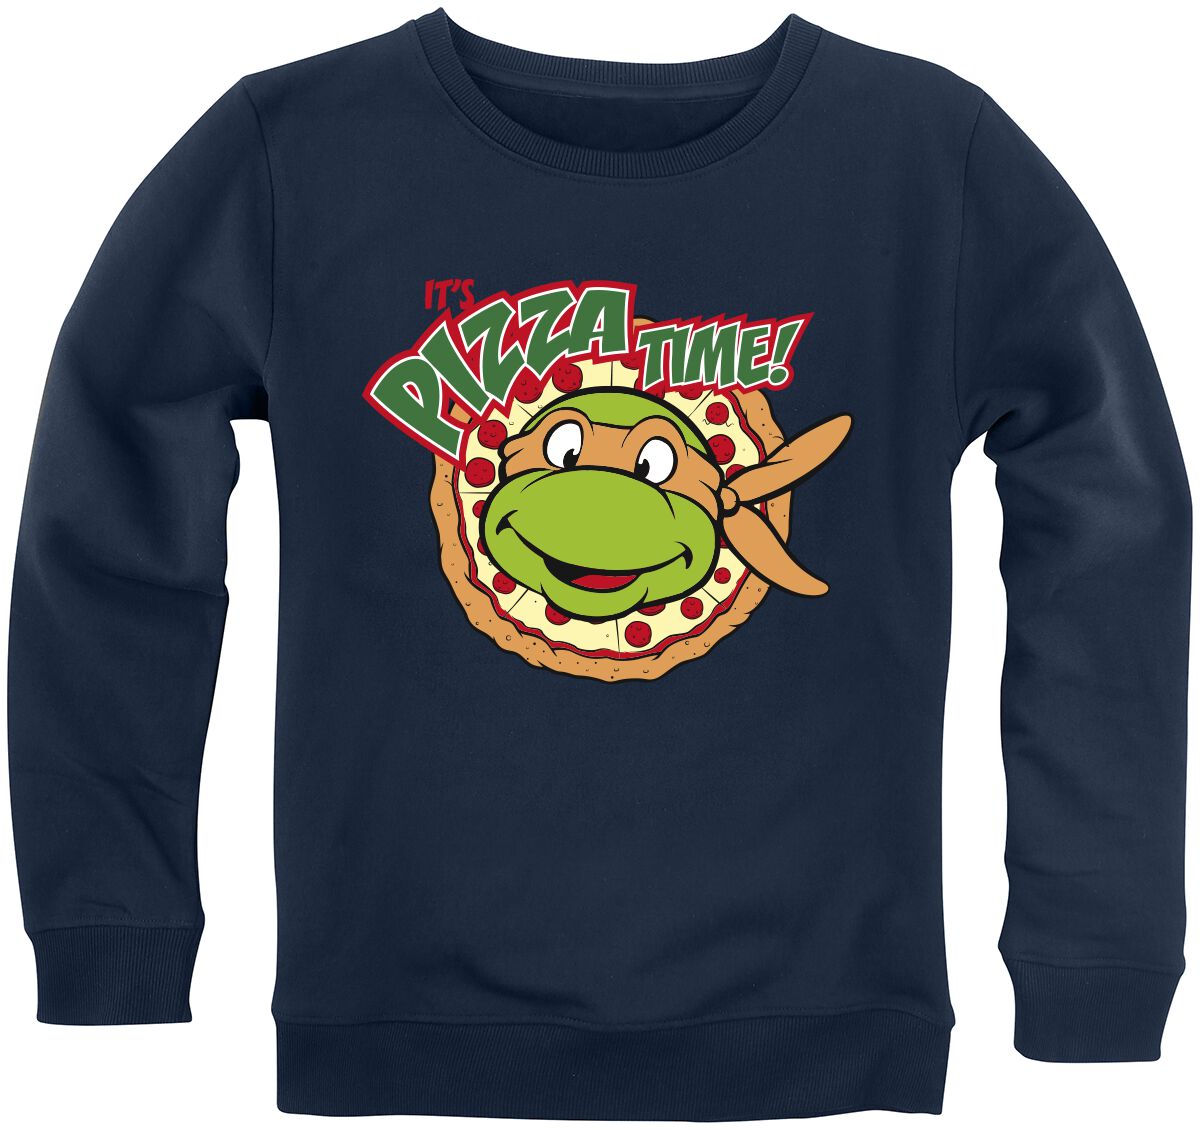 Teenage Mutant Ninja Turtles Sweatshirt für Kleinkinder - Kids - It`s Pizza Time! - für Mädchen & Jungen - blau  - EMP exklusives Merchandise!